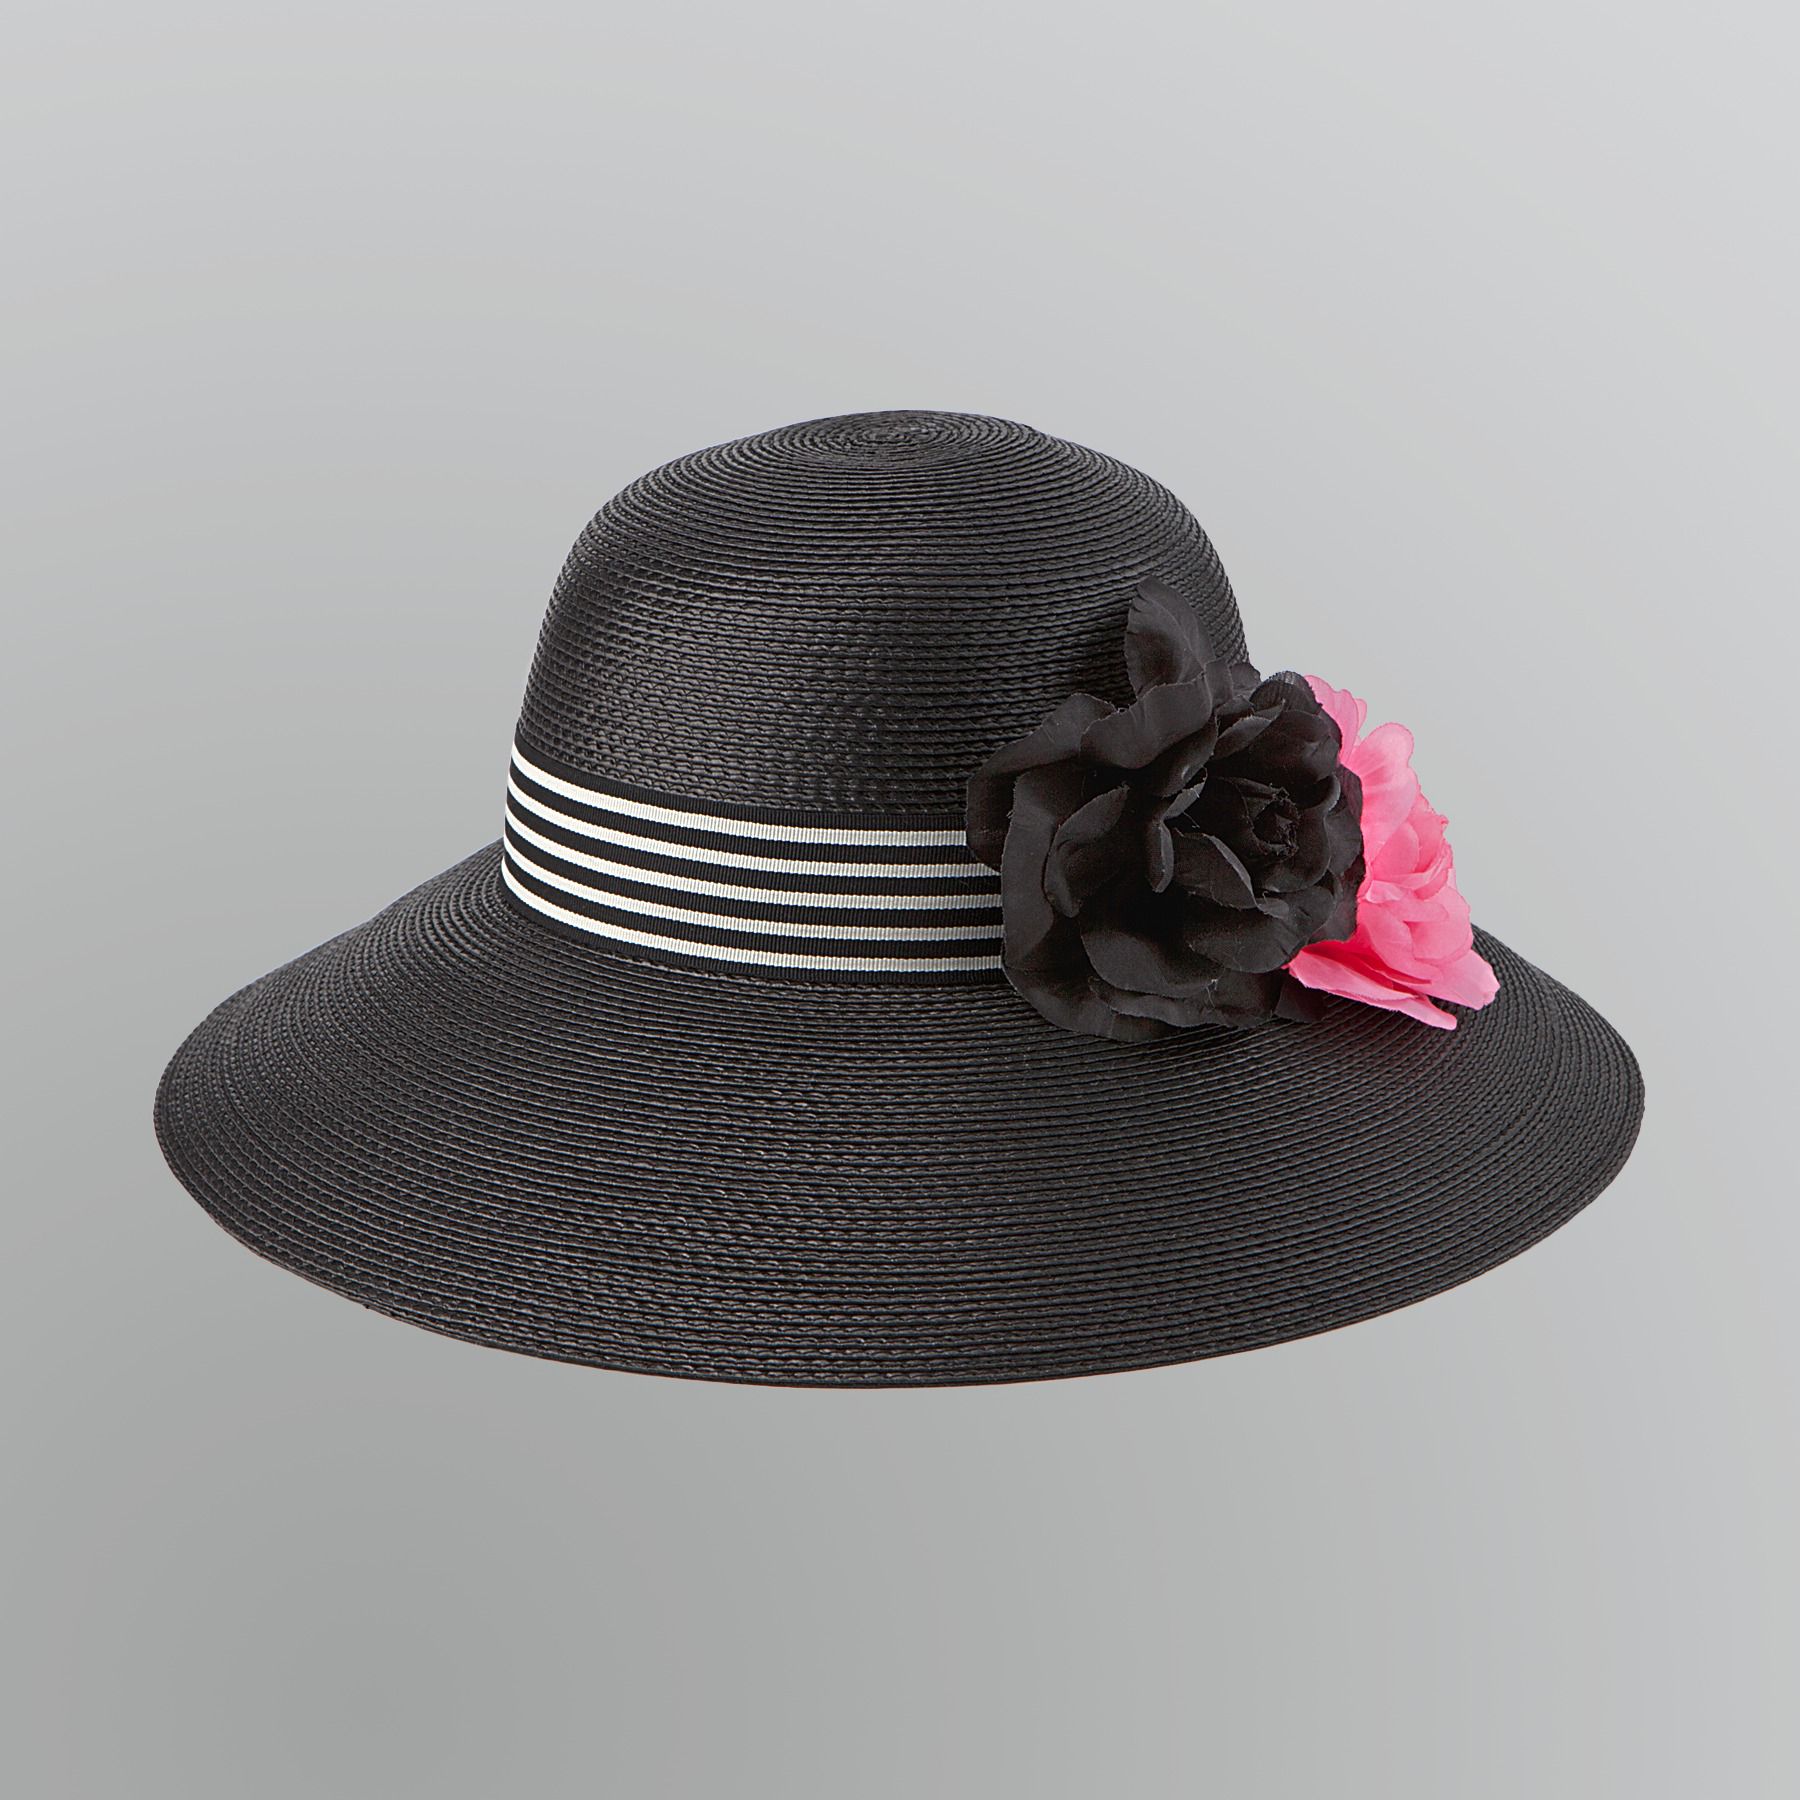 Jaclyn Smith Women's Wide Brim Straw Hat